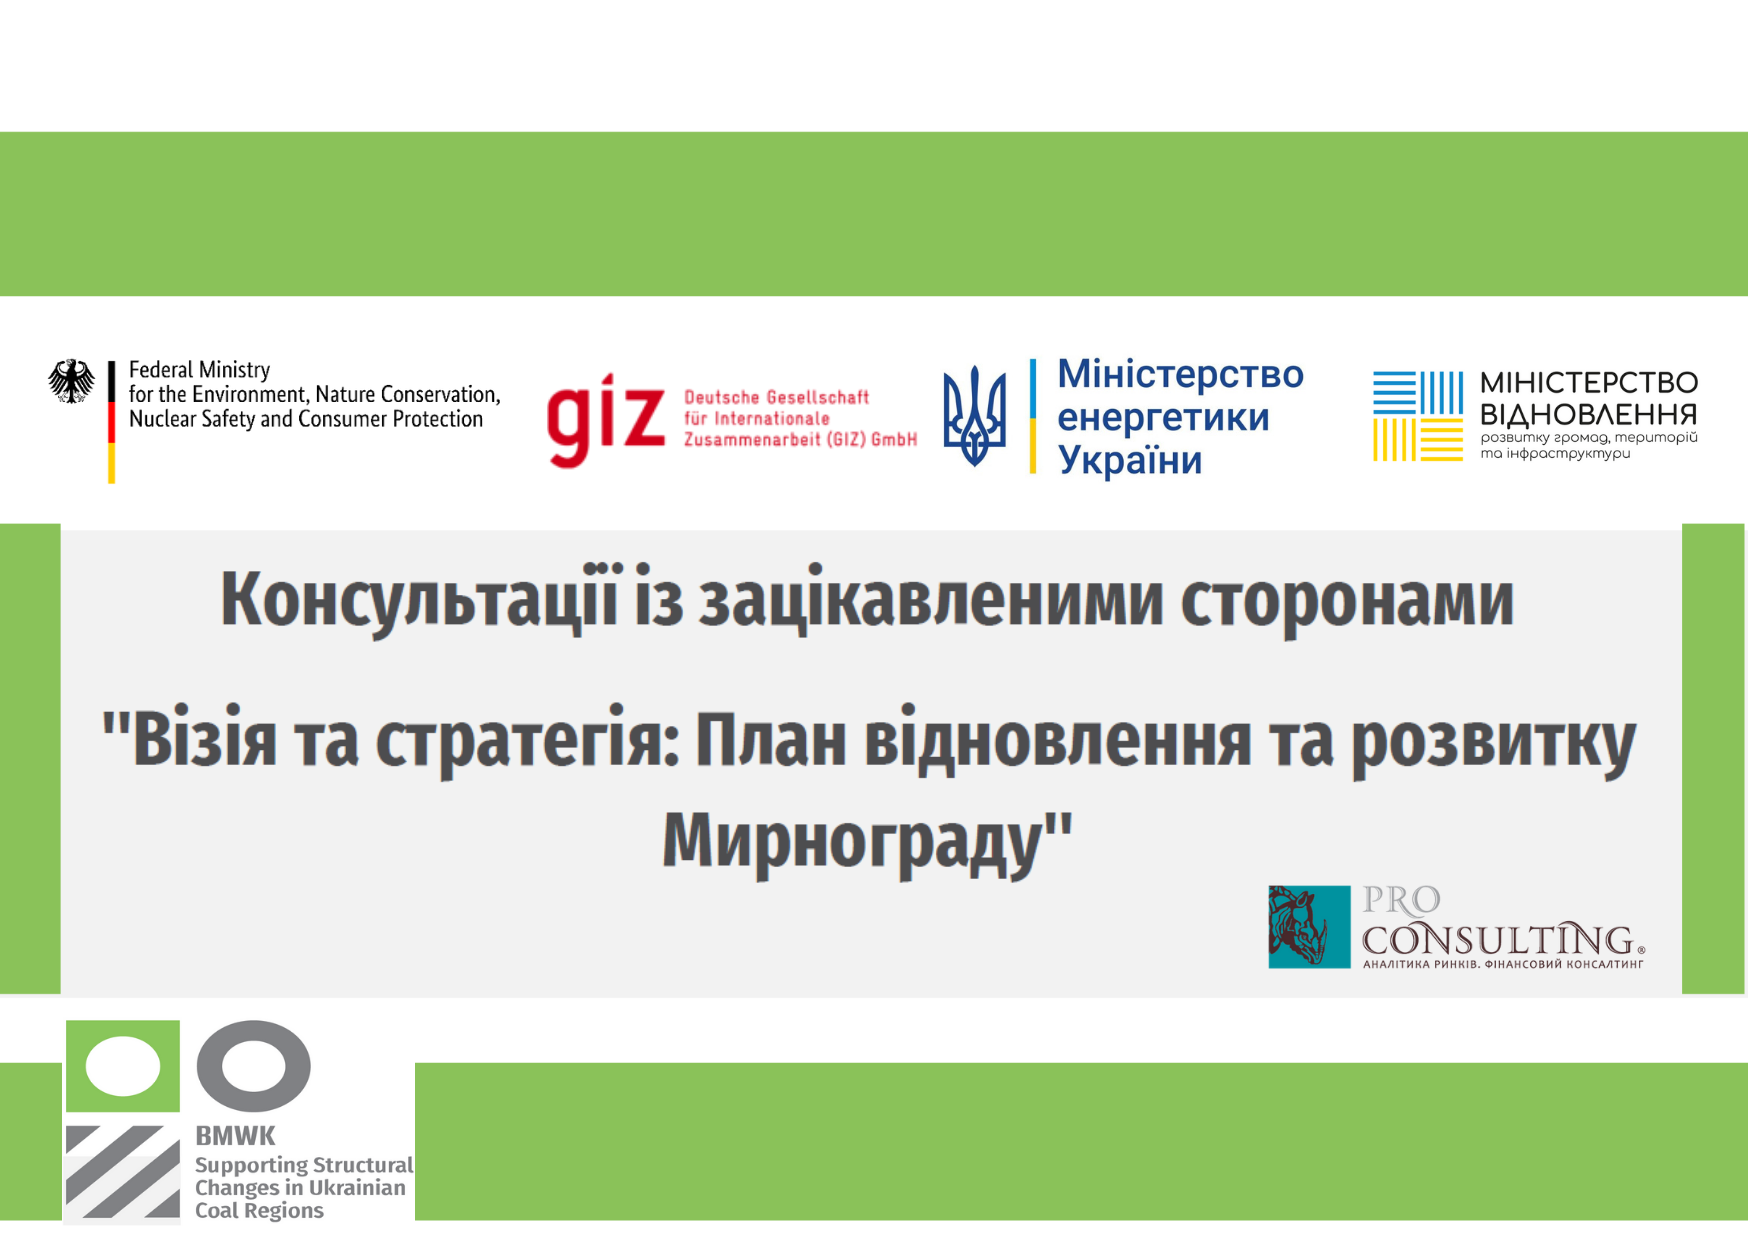 Эксперты Pro-Consulting примут участие в консультациях с заинтересованными сторонами «Визия и стратегия: План восстановления и развития Мирнограда»